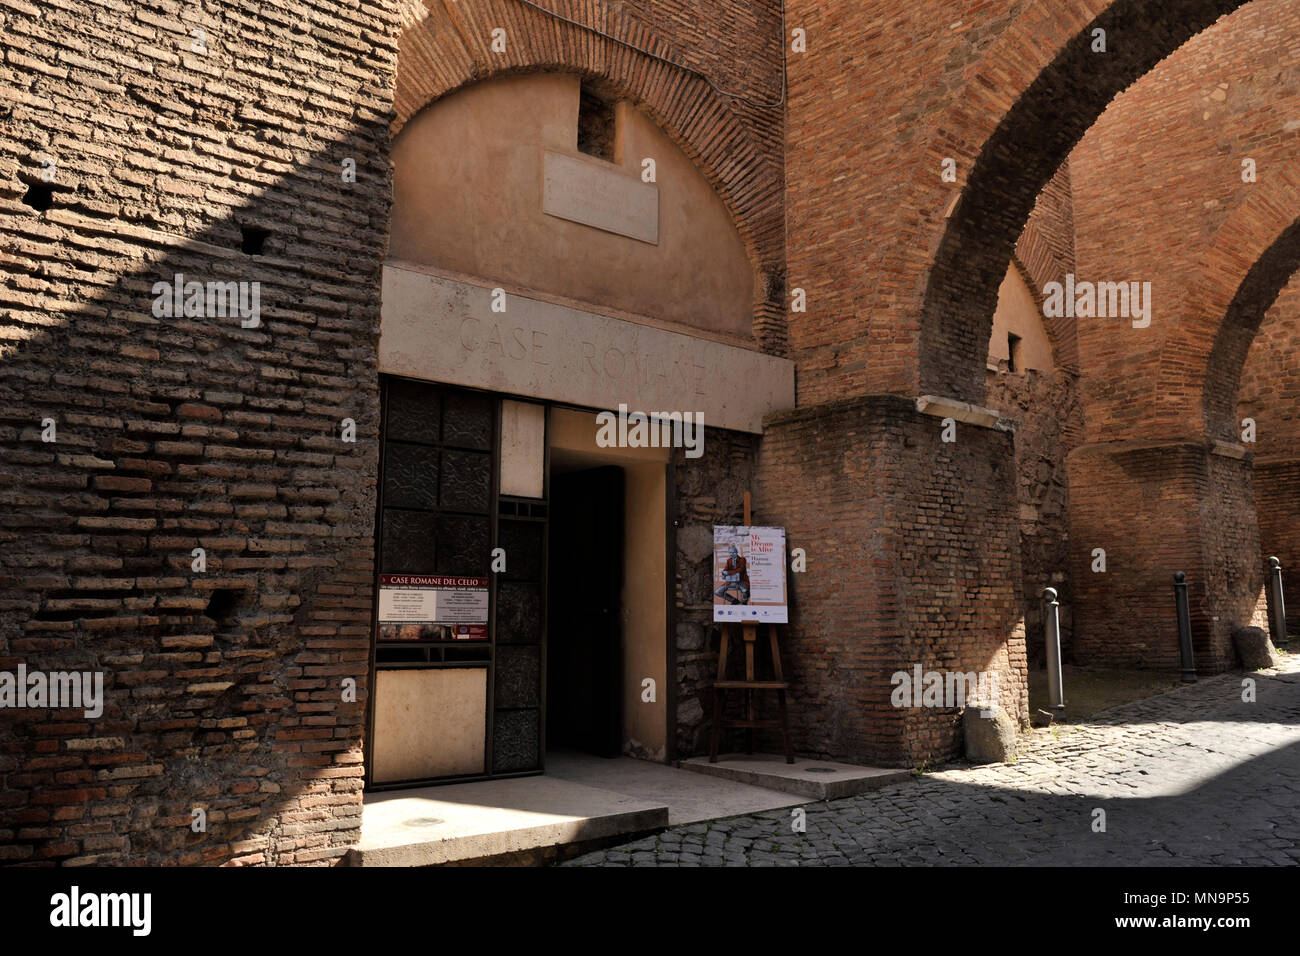 Italy, Rome, Celio, Clivo di Scauro, Case Romane del Celio and medieval arches Stock Photo